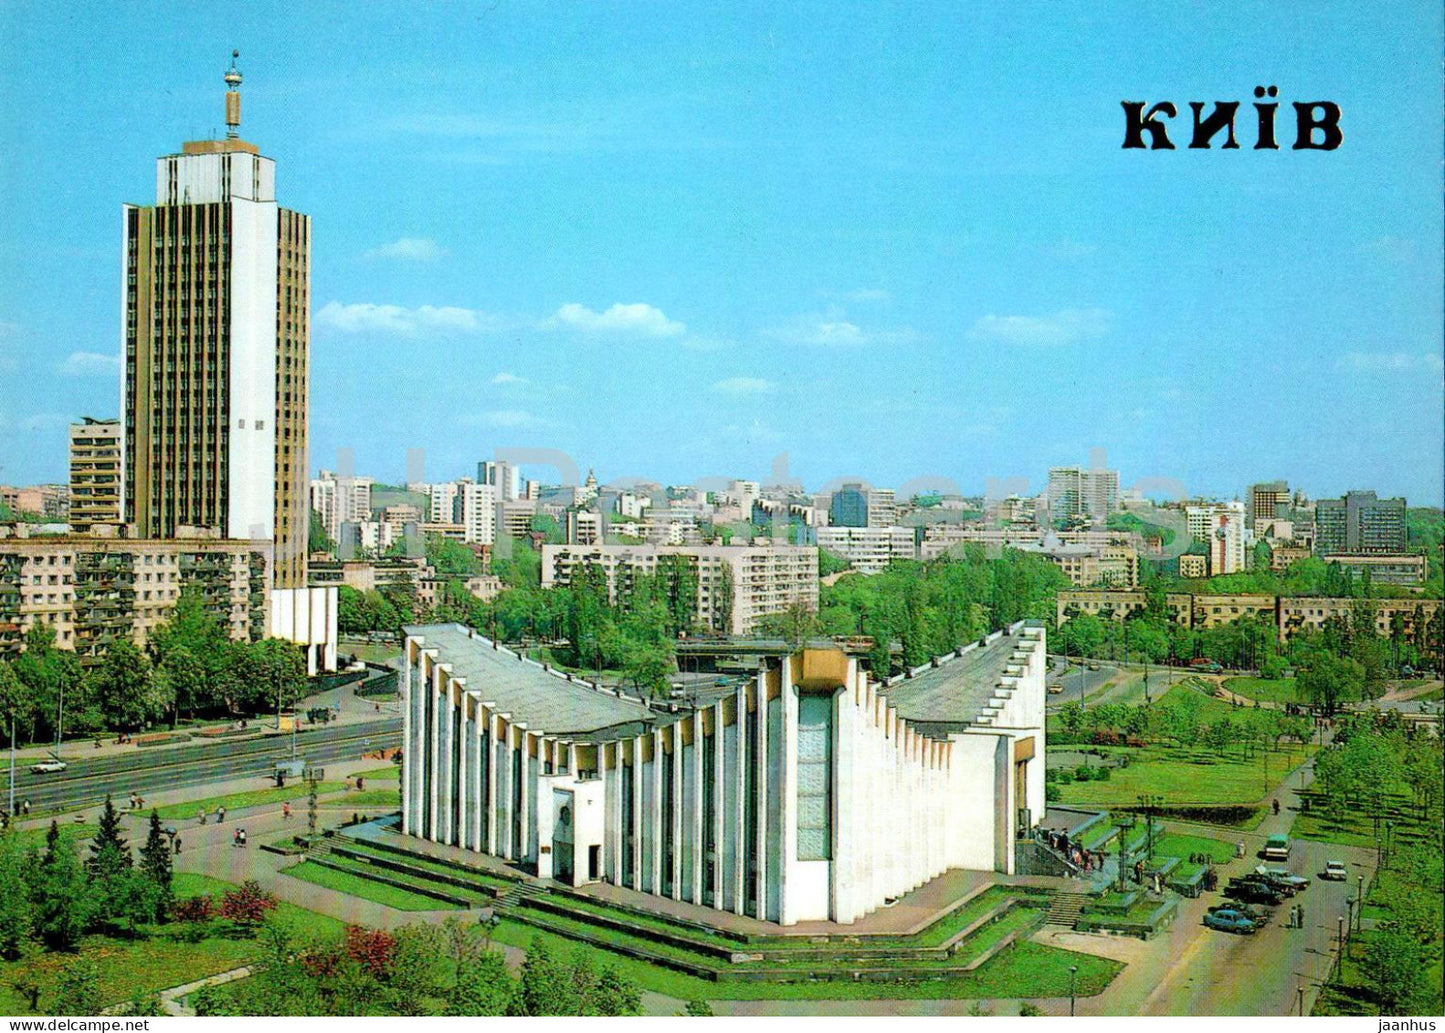 Kyiv - Kiev - Palace of Weddings and Newborns - 1990 - Ukraine USSR - unused - JH Postcards